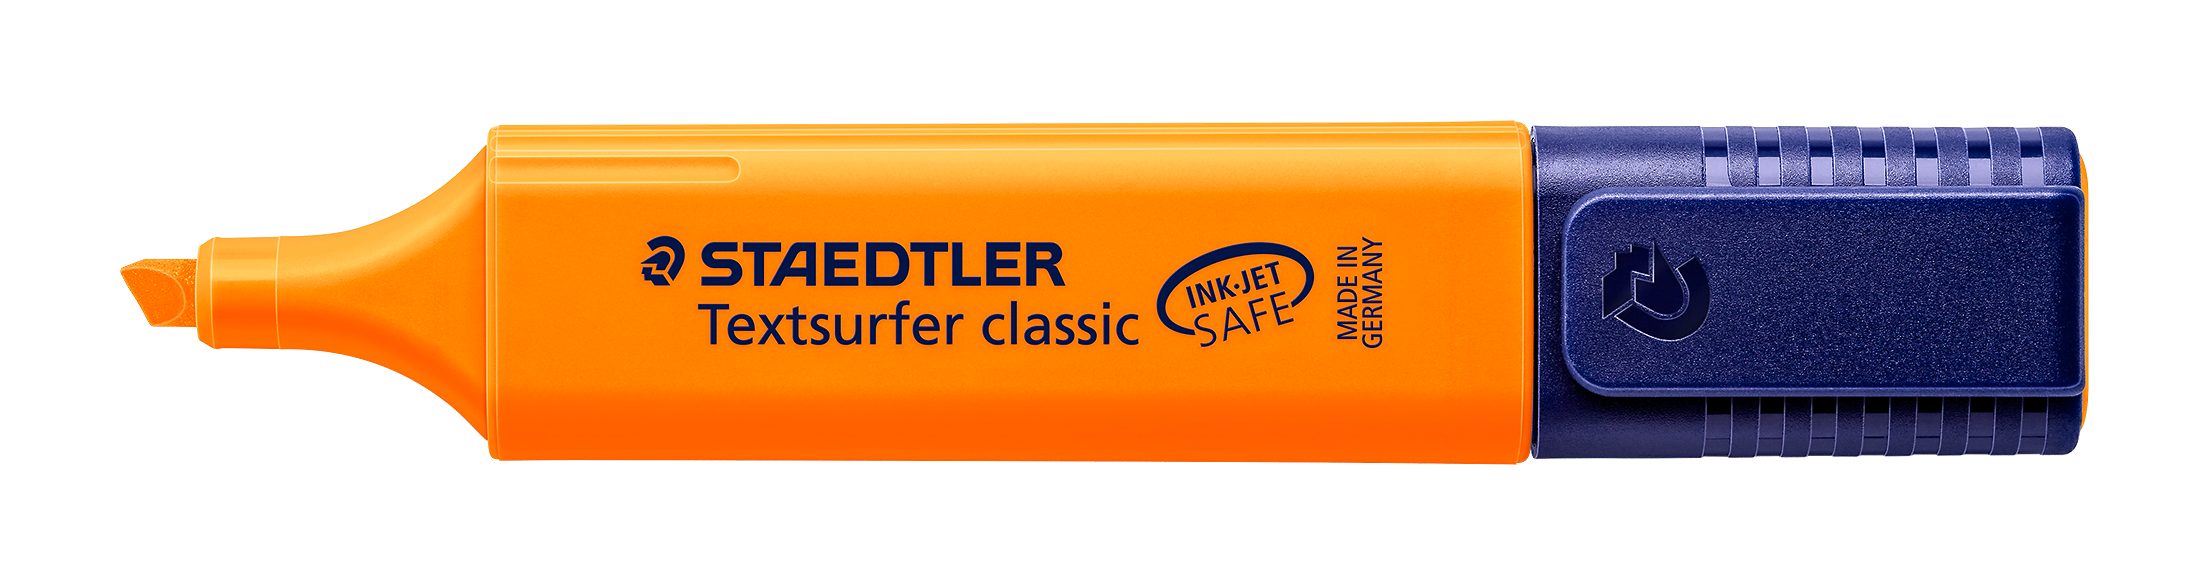 STAEDTLER Marker Staedtler 364-4 Leuchtstift, INK Textsurfer orange classic SAFE JET